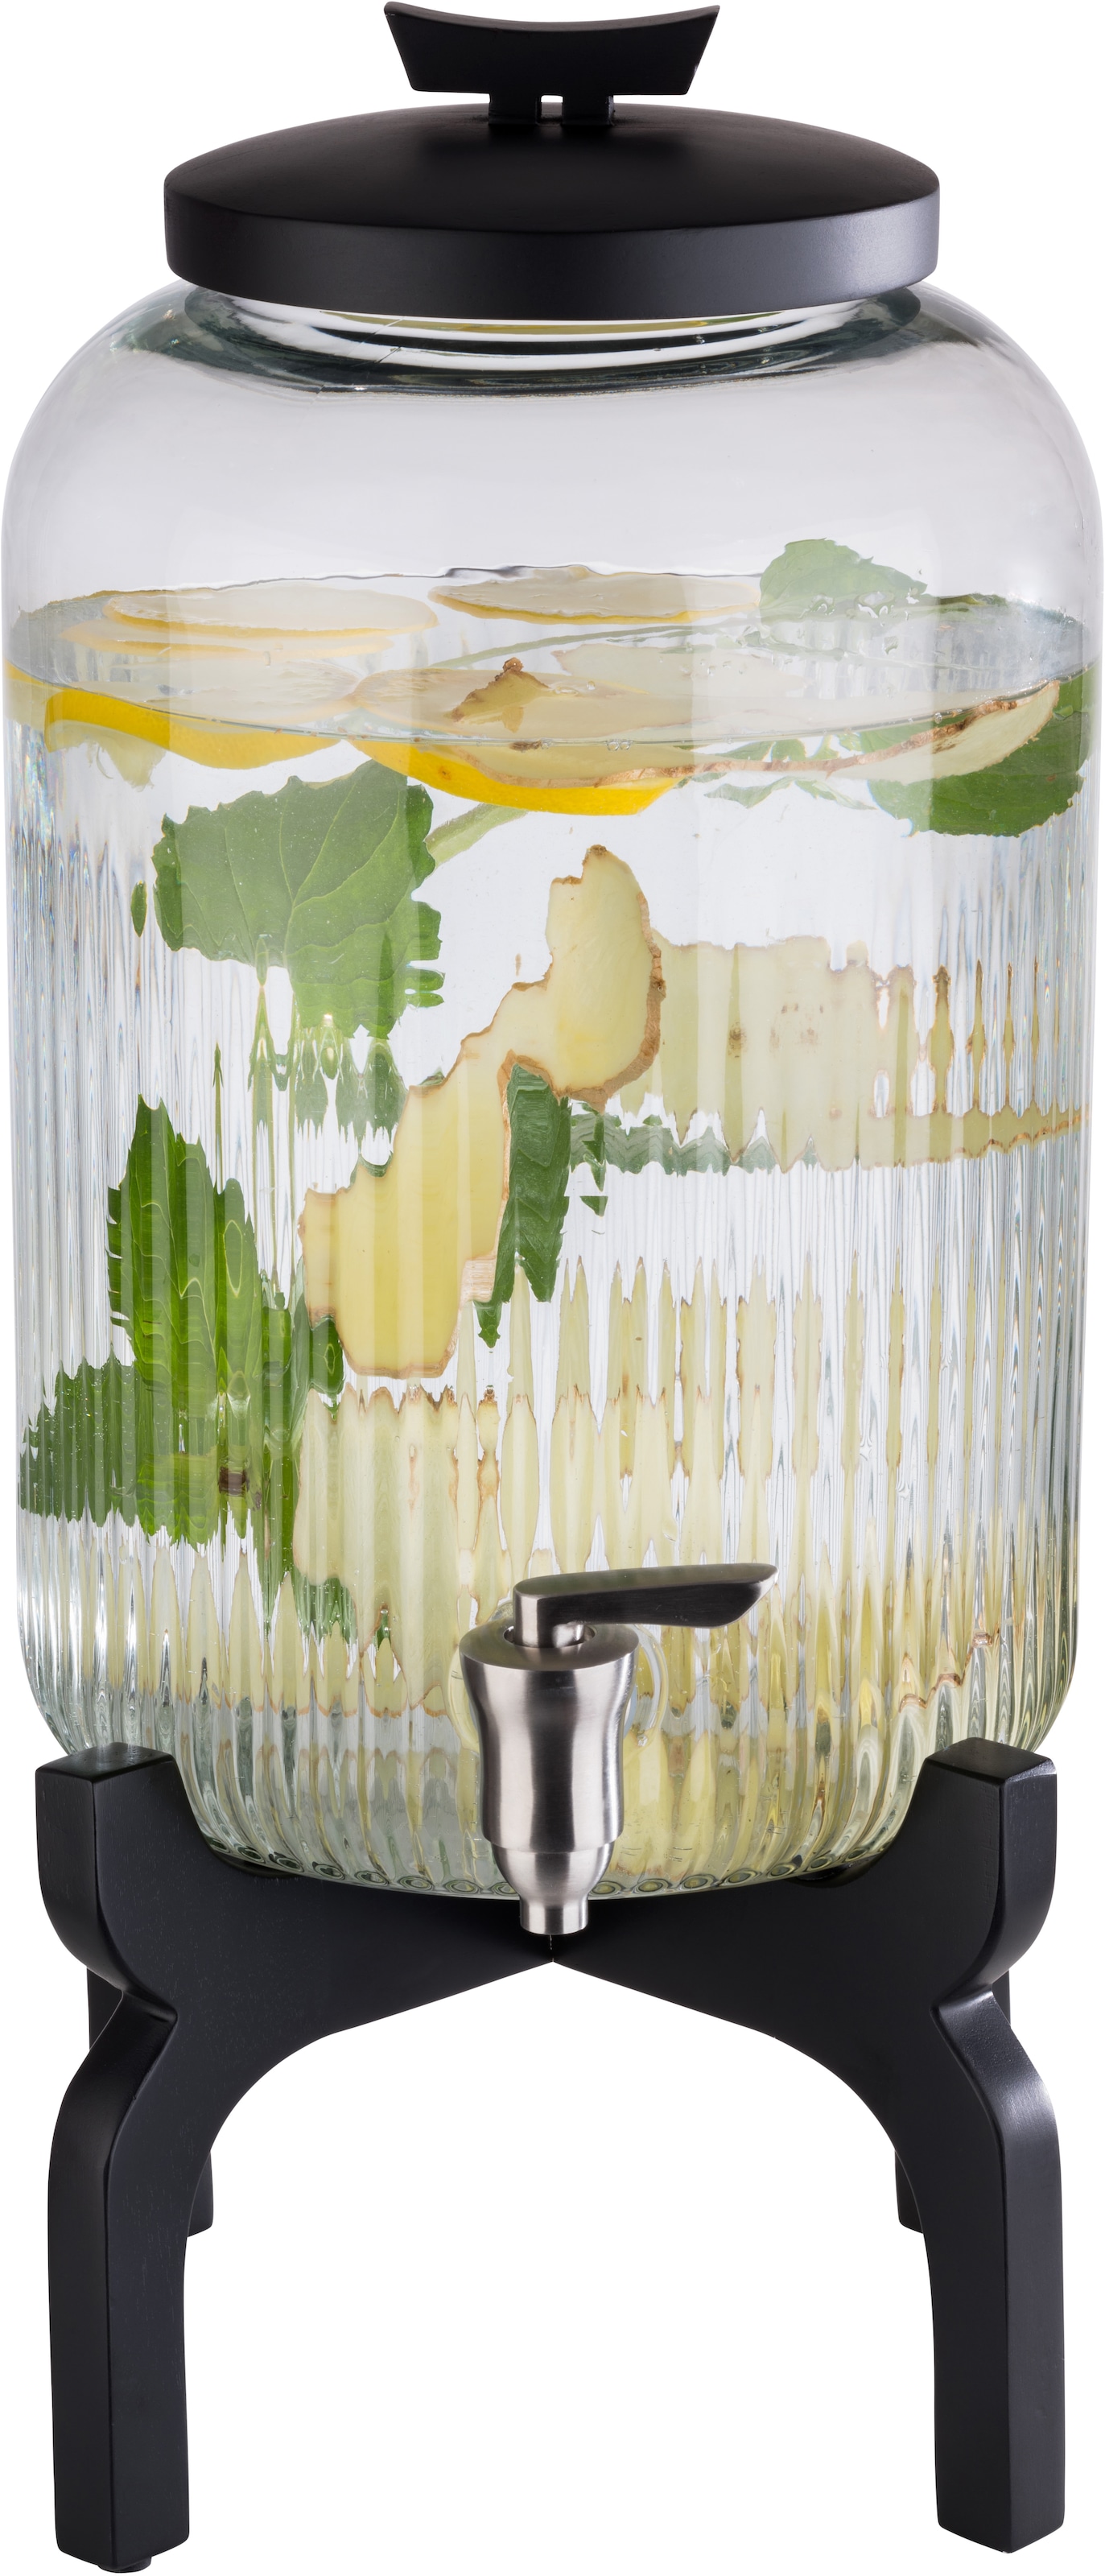 Getränkespender »Asia«, Behälter aus Glas, Zapfhahn aus Edelstahl, 7 Liter...